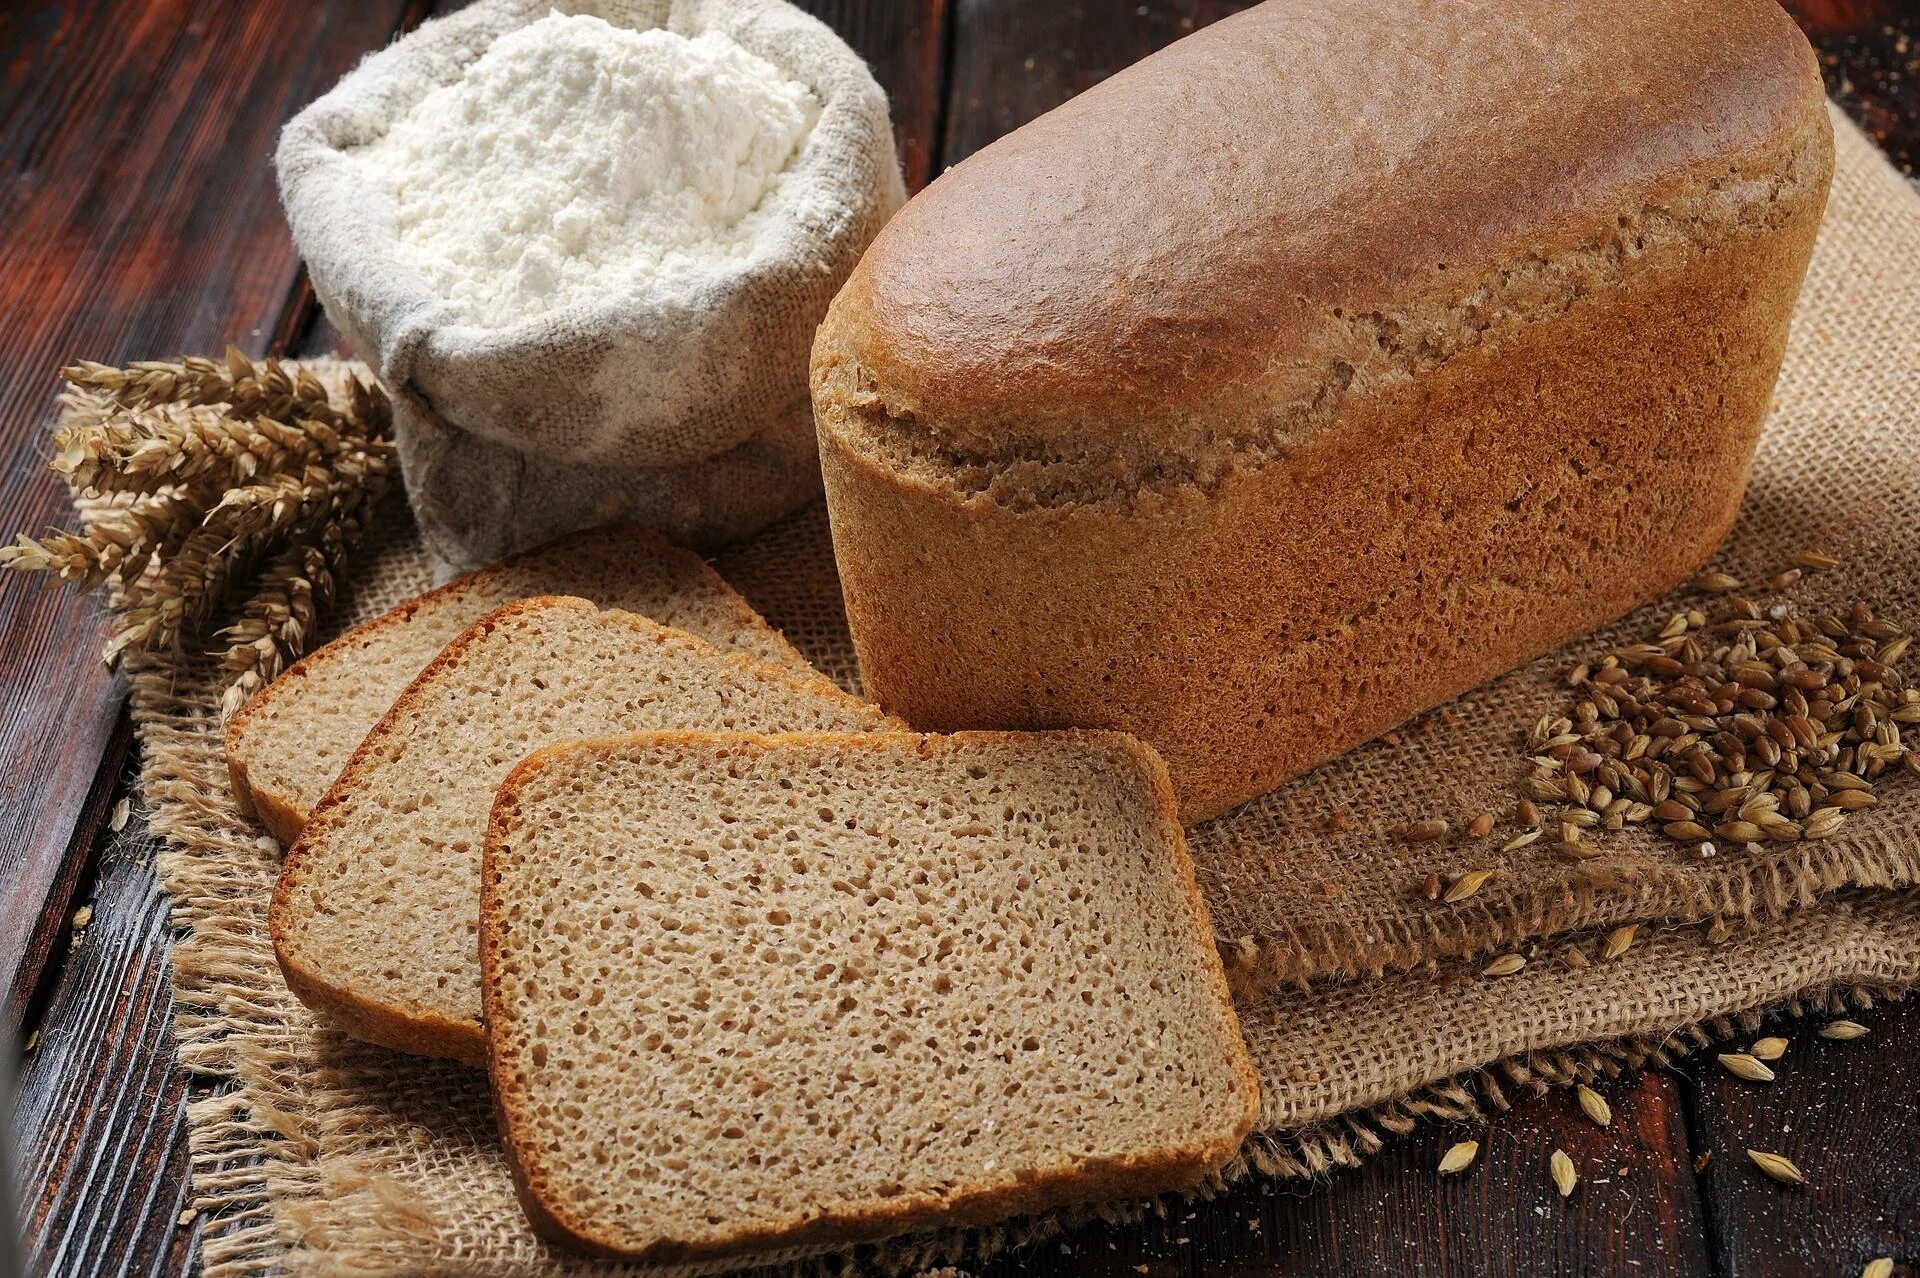 Ржано-пшеничный хлеб. Хлеб "Дарницкий" ржано-пшенич. Хлеб ржано-пшеничный 650гр. Рецептура ржано-пшеничного хлеба. Щедро посыпана совершенно пусты ржаным хлебом